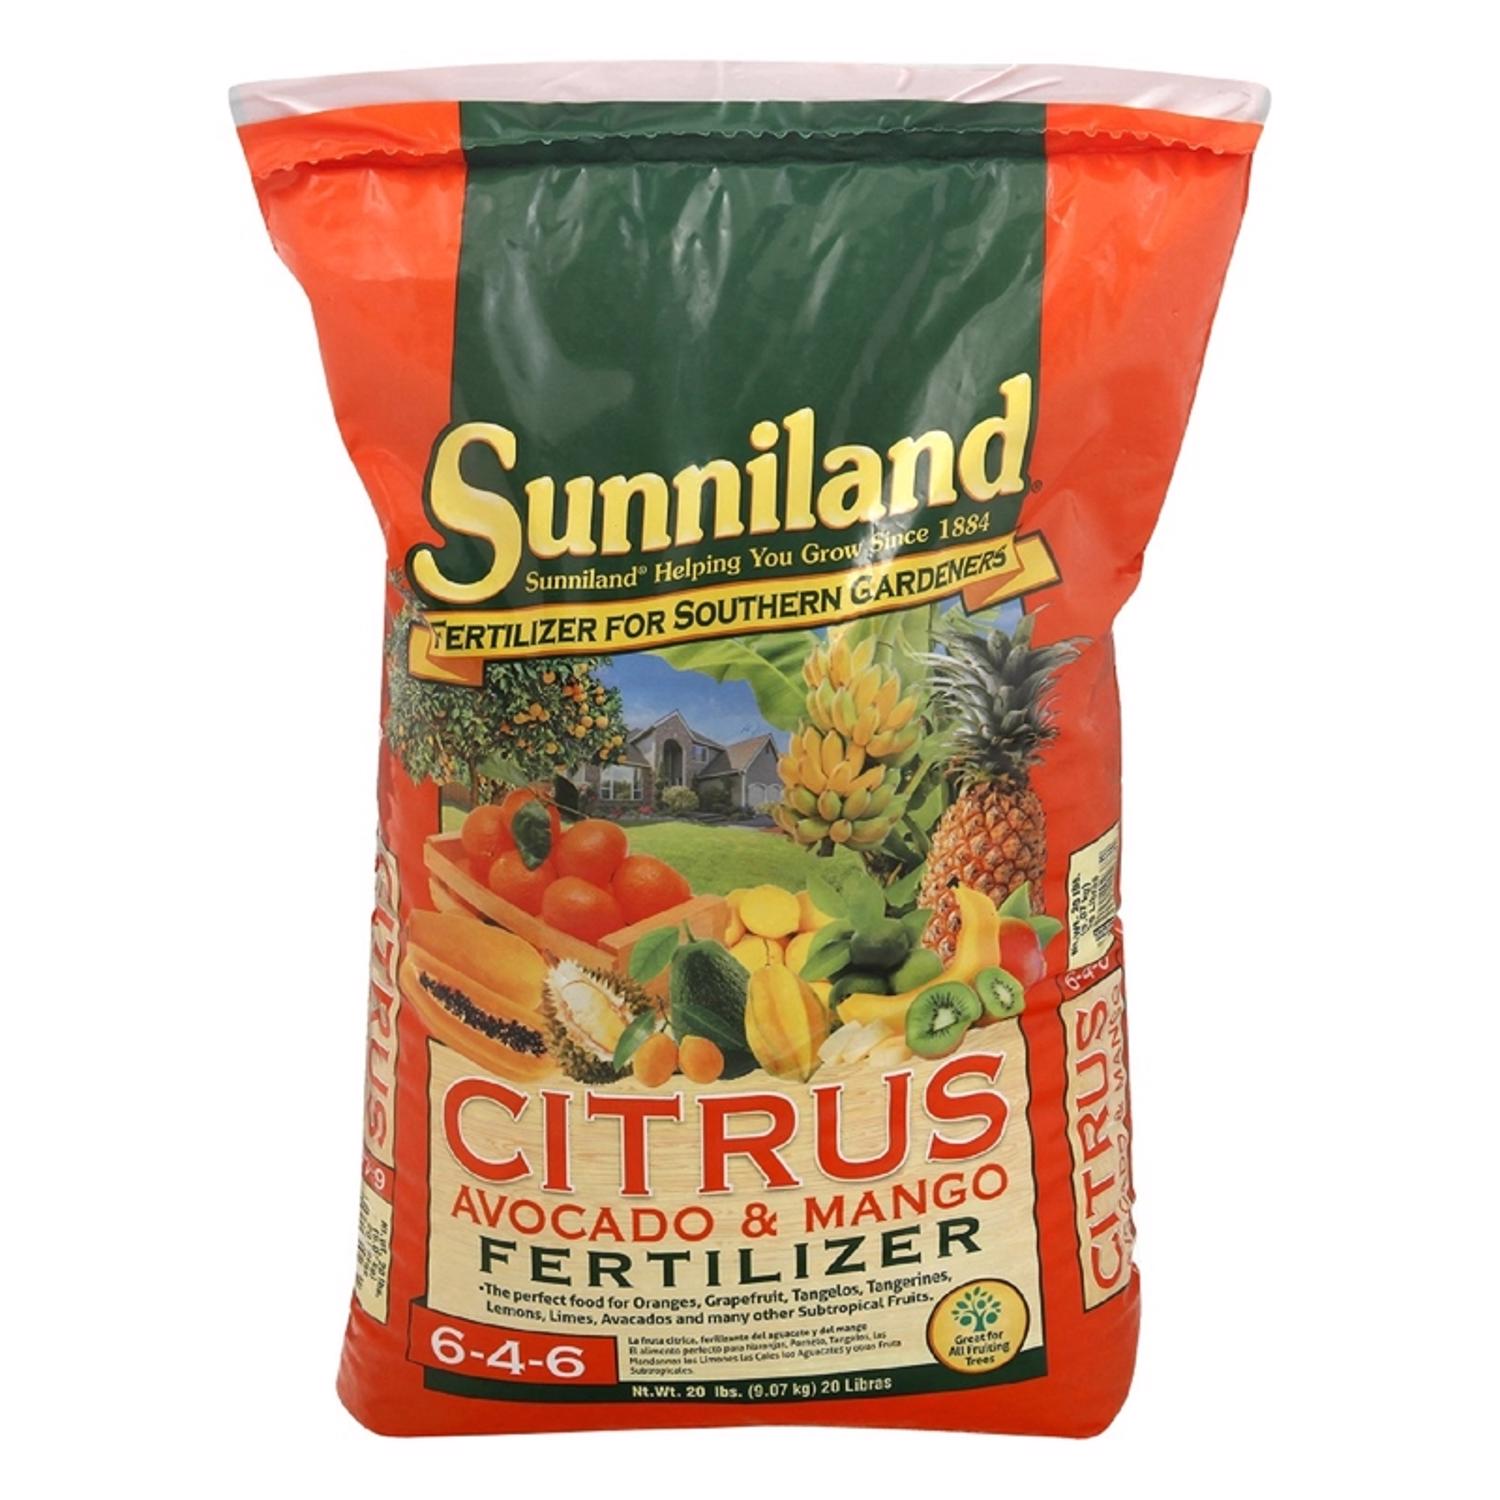 Sunniland Avocado and Mango 6-4-6 Plant Fertilizer 20 lb